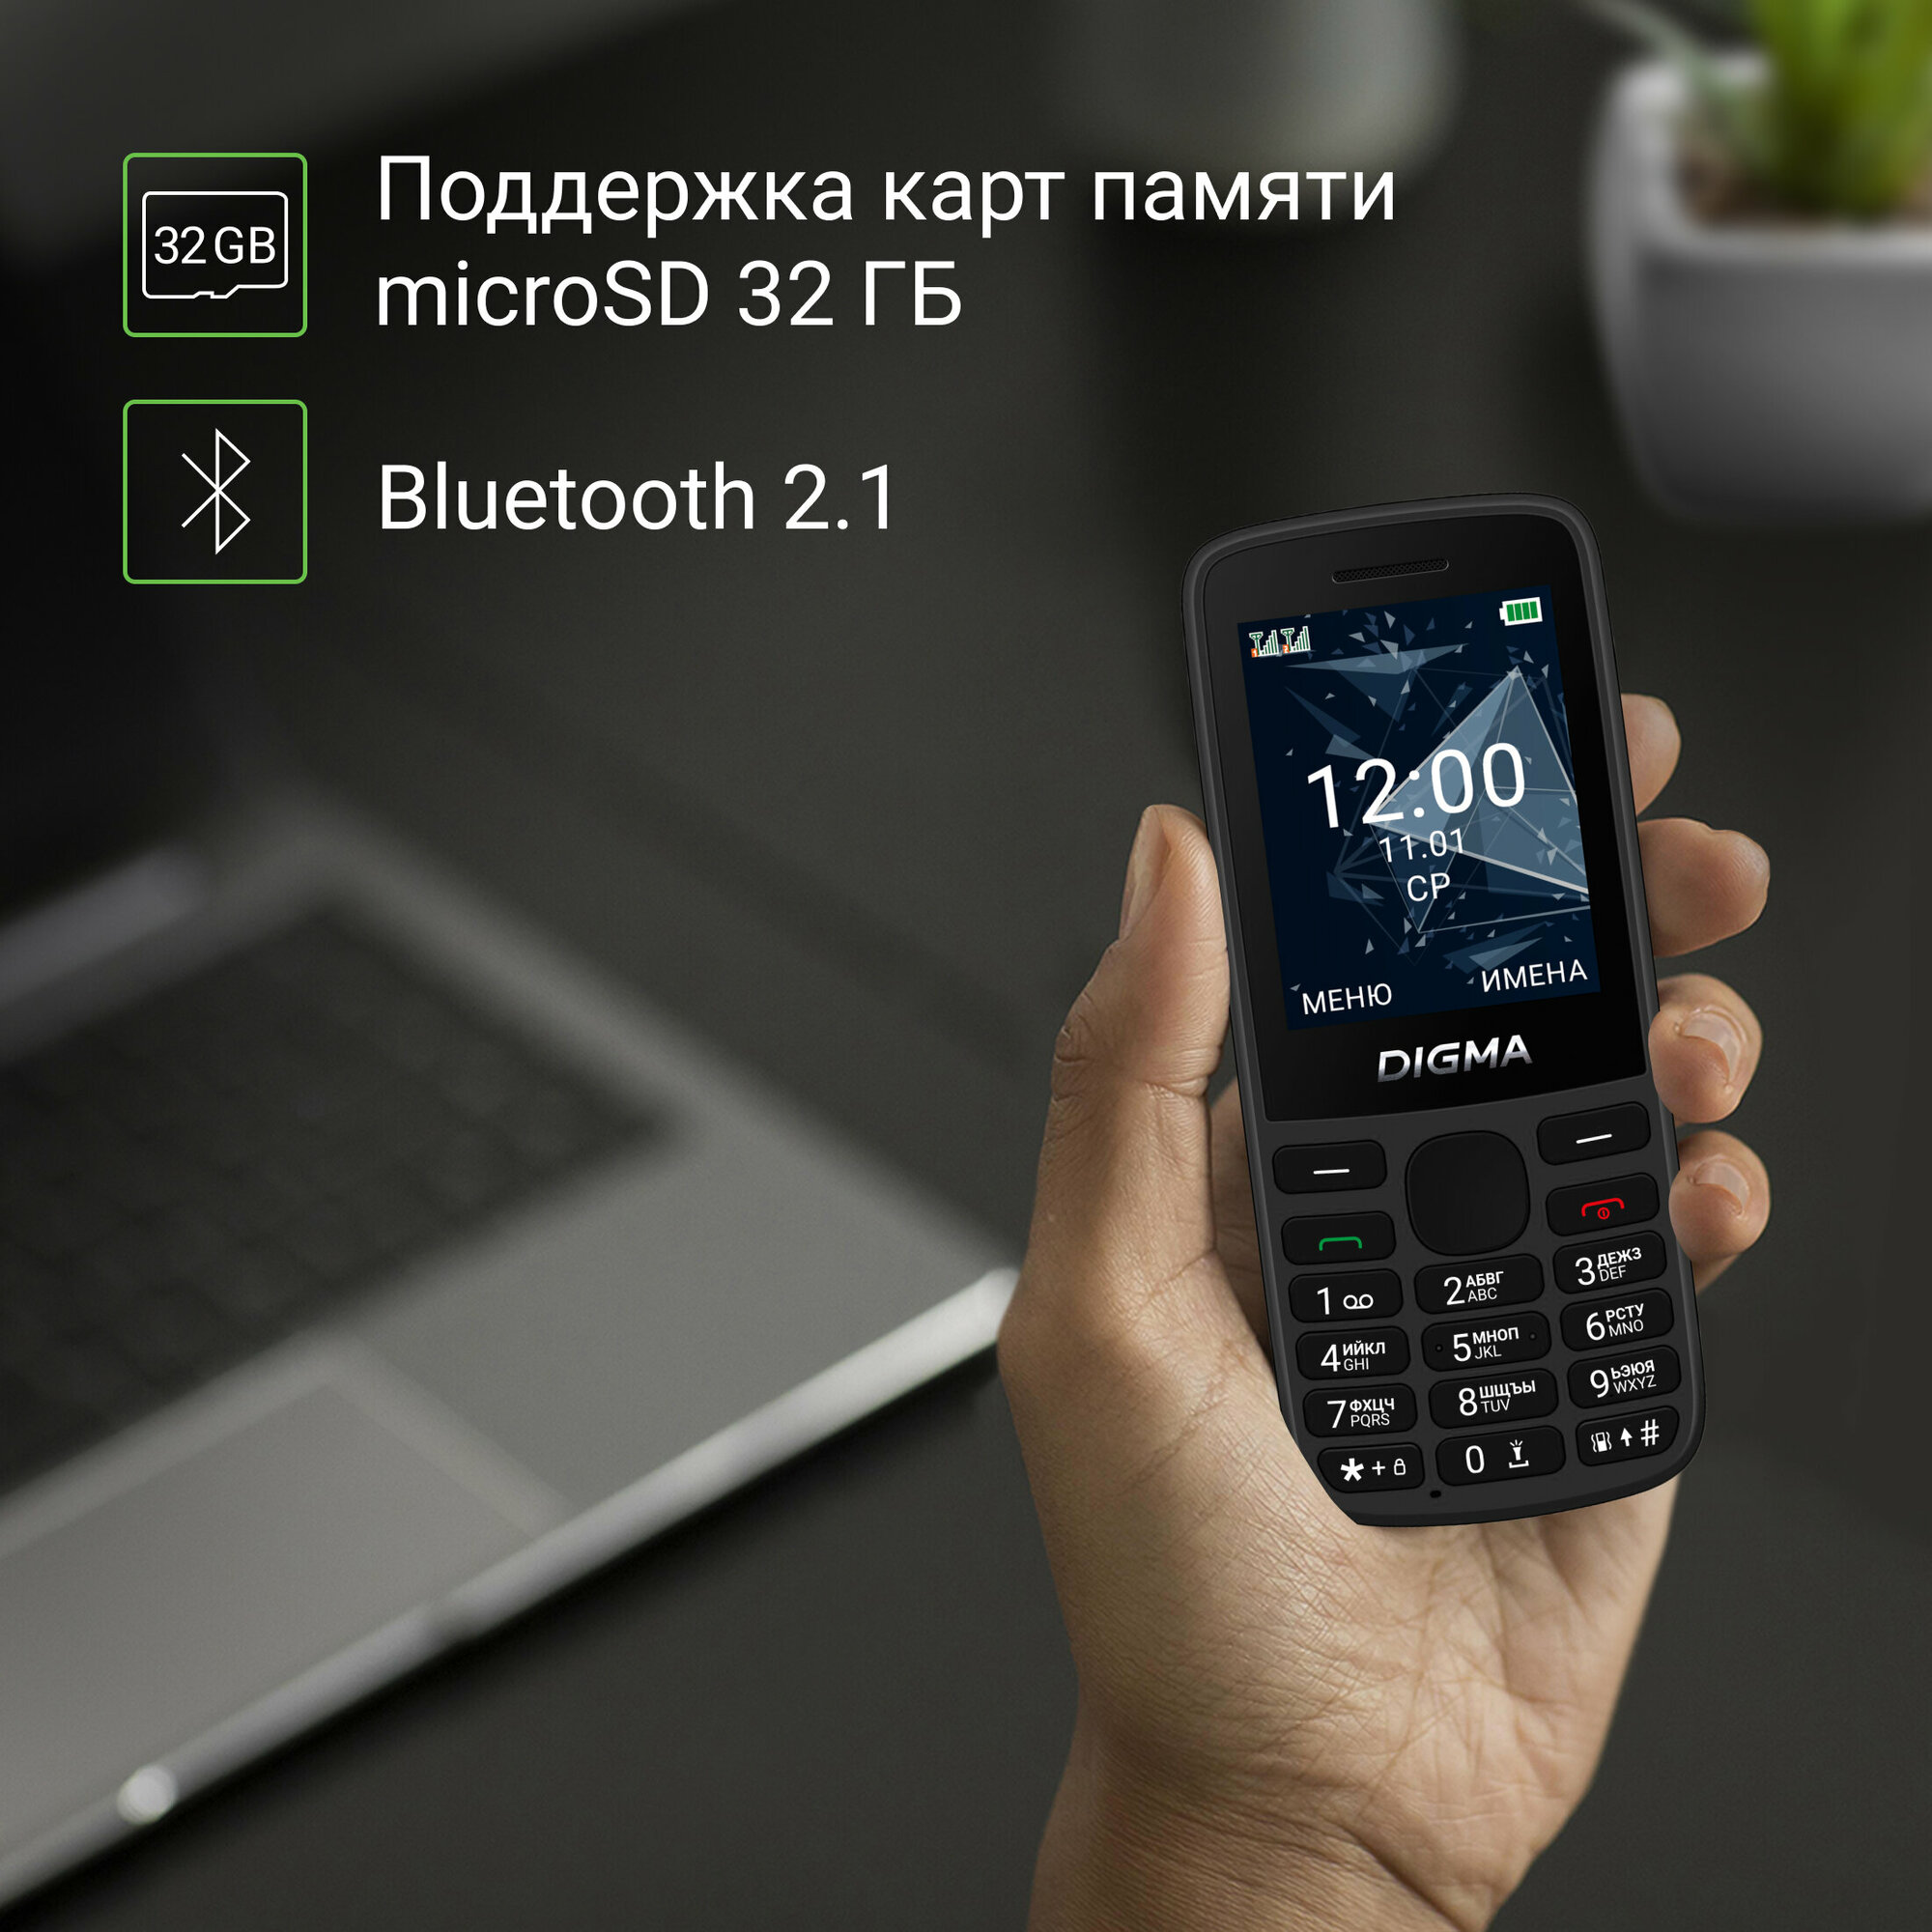 Мобильный телефон Digma 1888900 Linx 32Mb 32Mb черный моноблок 2Sim 2.4" 240x320 GSM900/1800 GSM1900 - фото №10